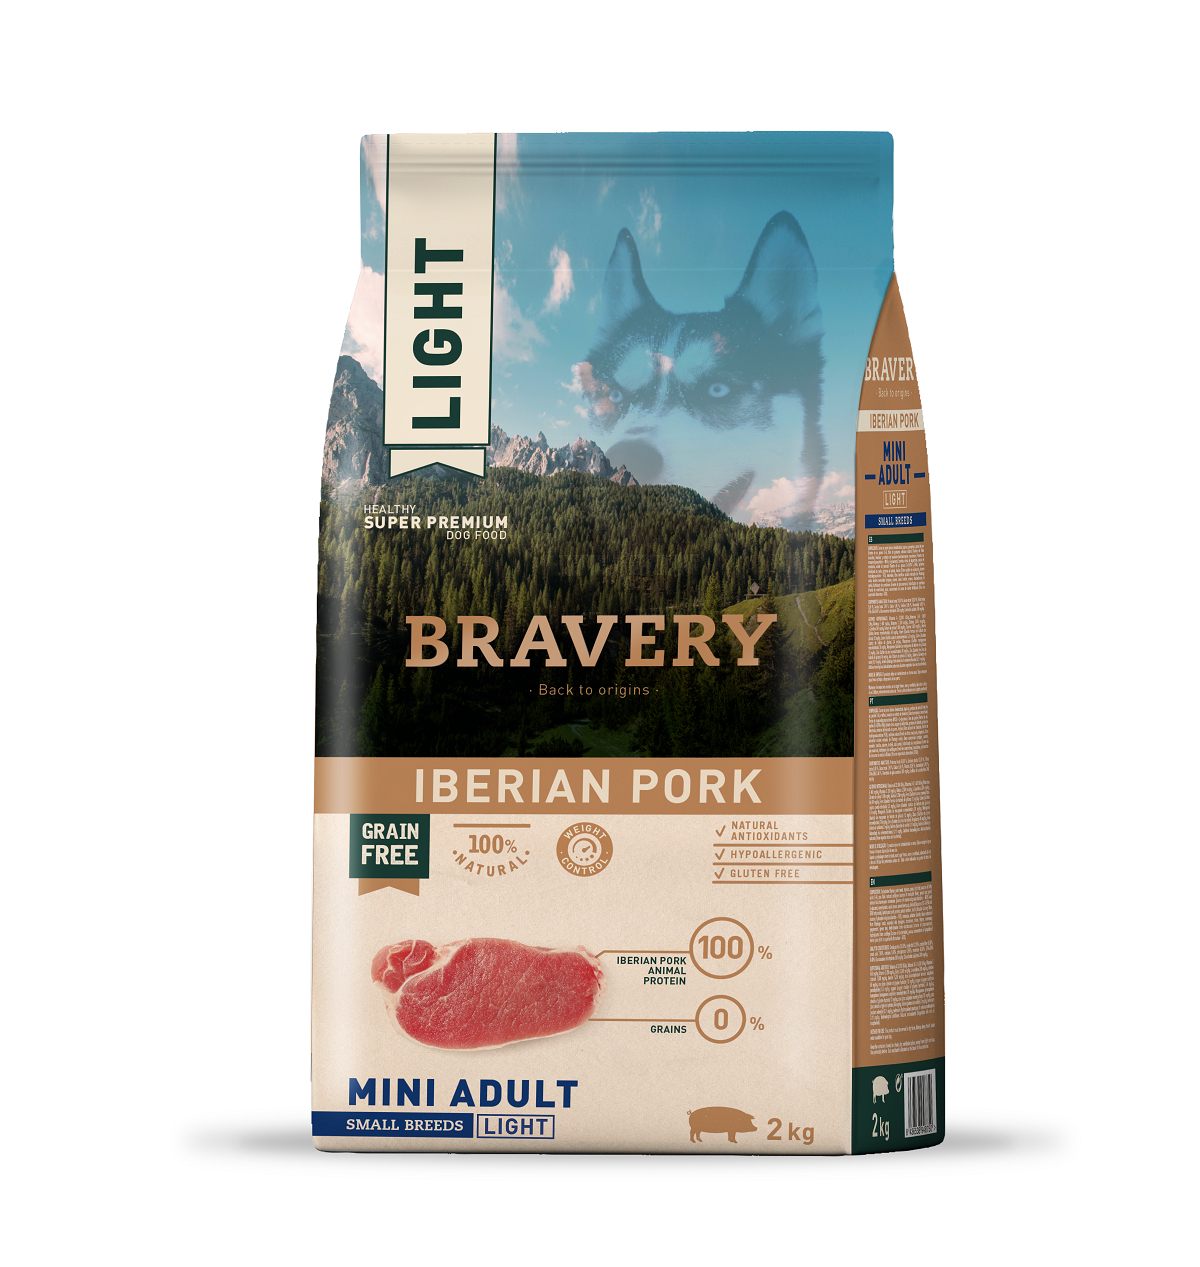 BRAVERY Adult Small Light Getreidefrei Iberian Pork ohne Getreide für kleine Hunde, sterilisiert